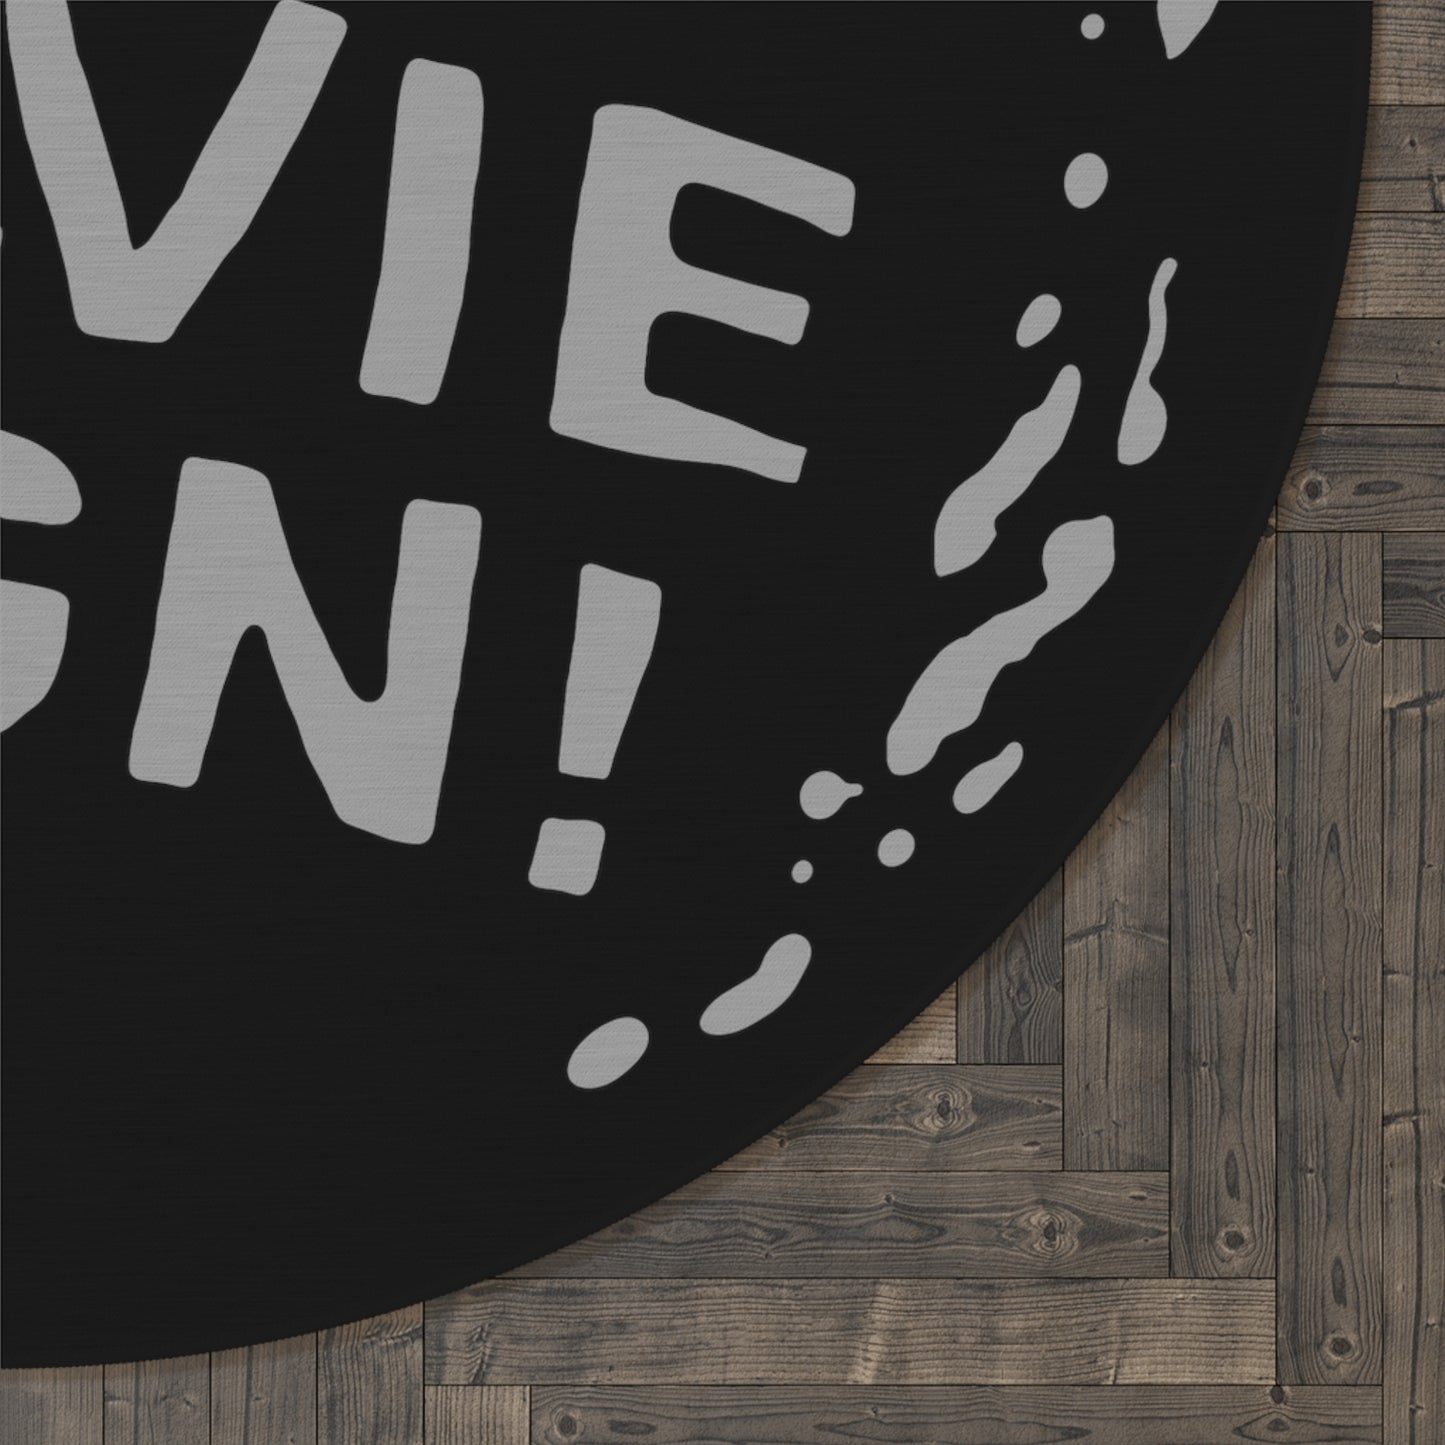 We've Got Movie Sign! round rug